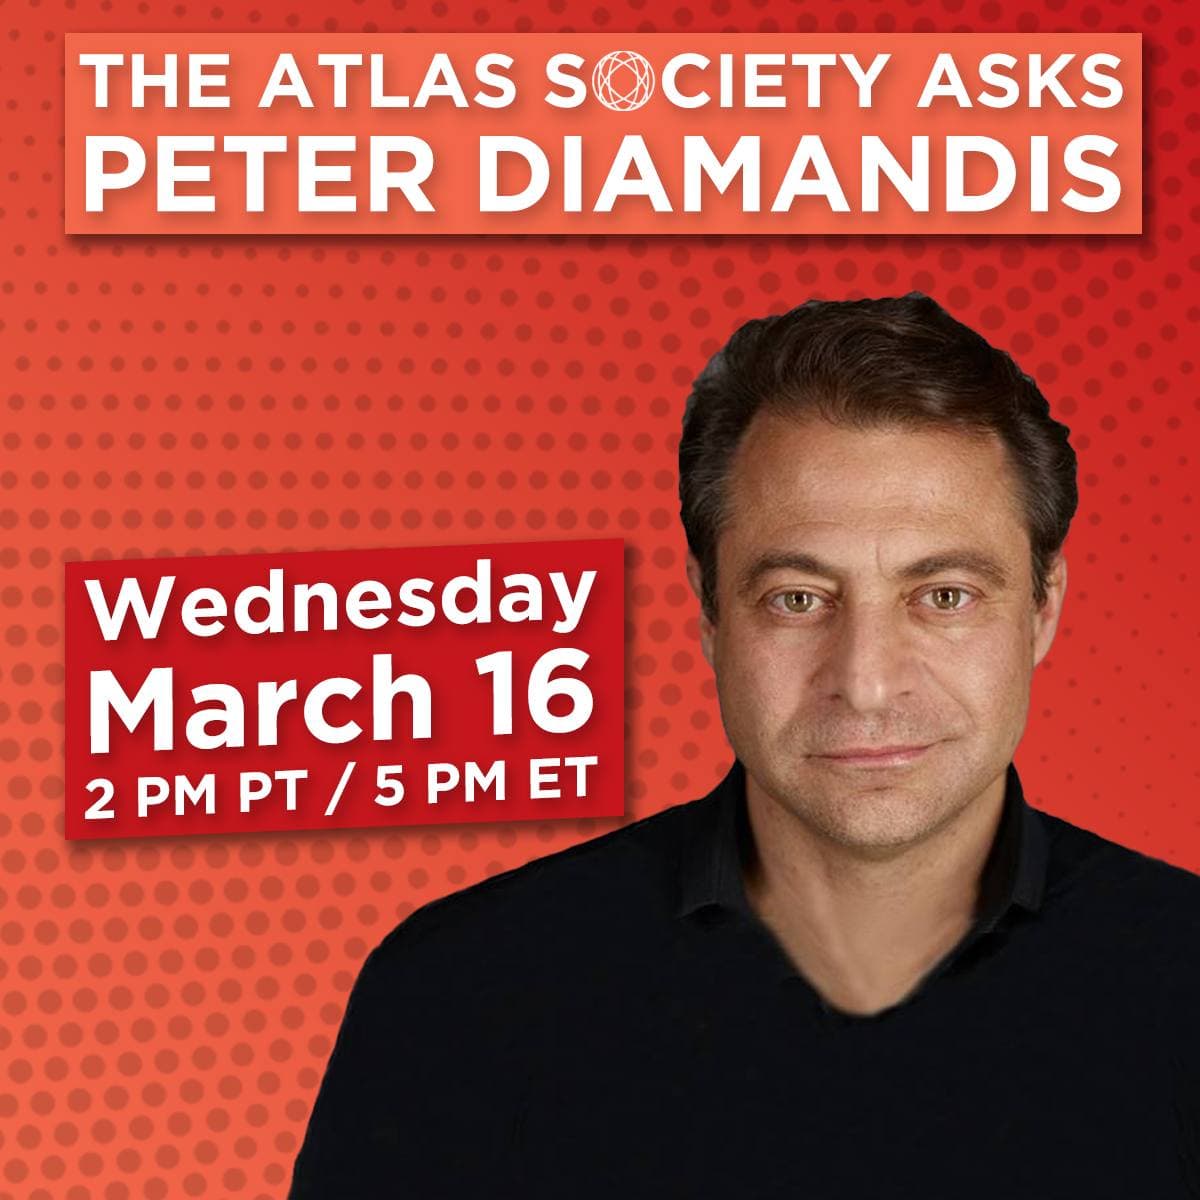 The Atlas Society Asks Peter Diamandis